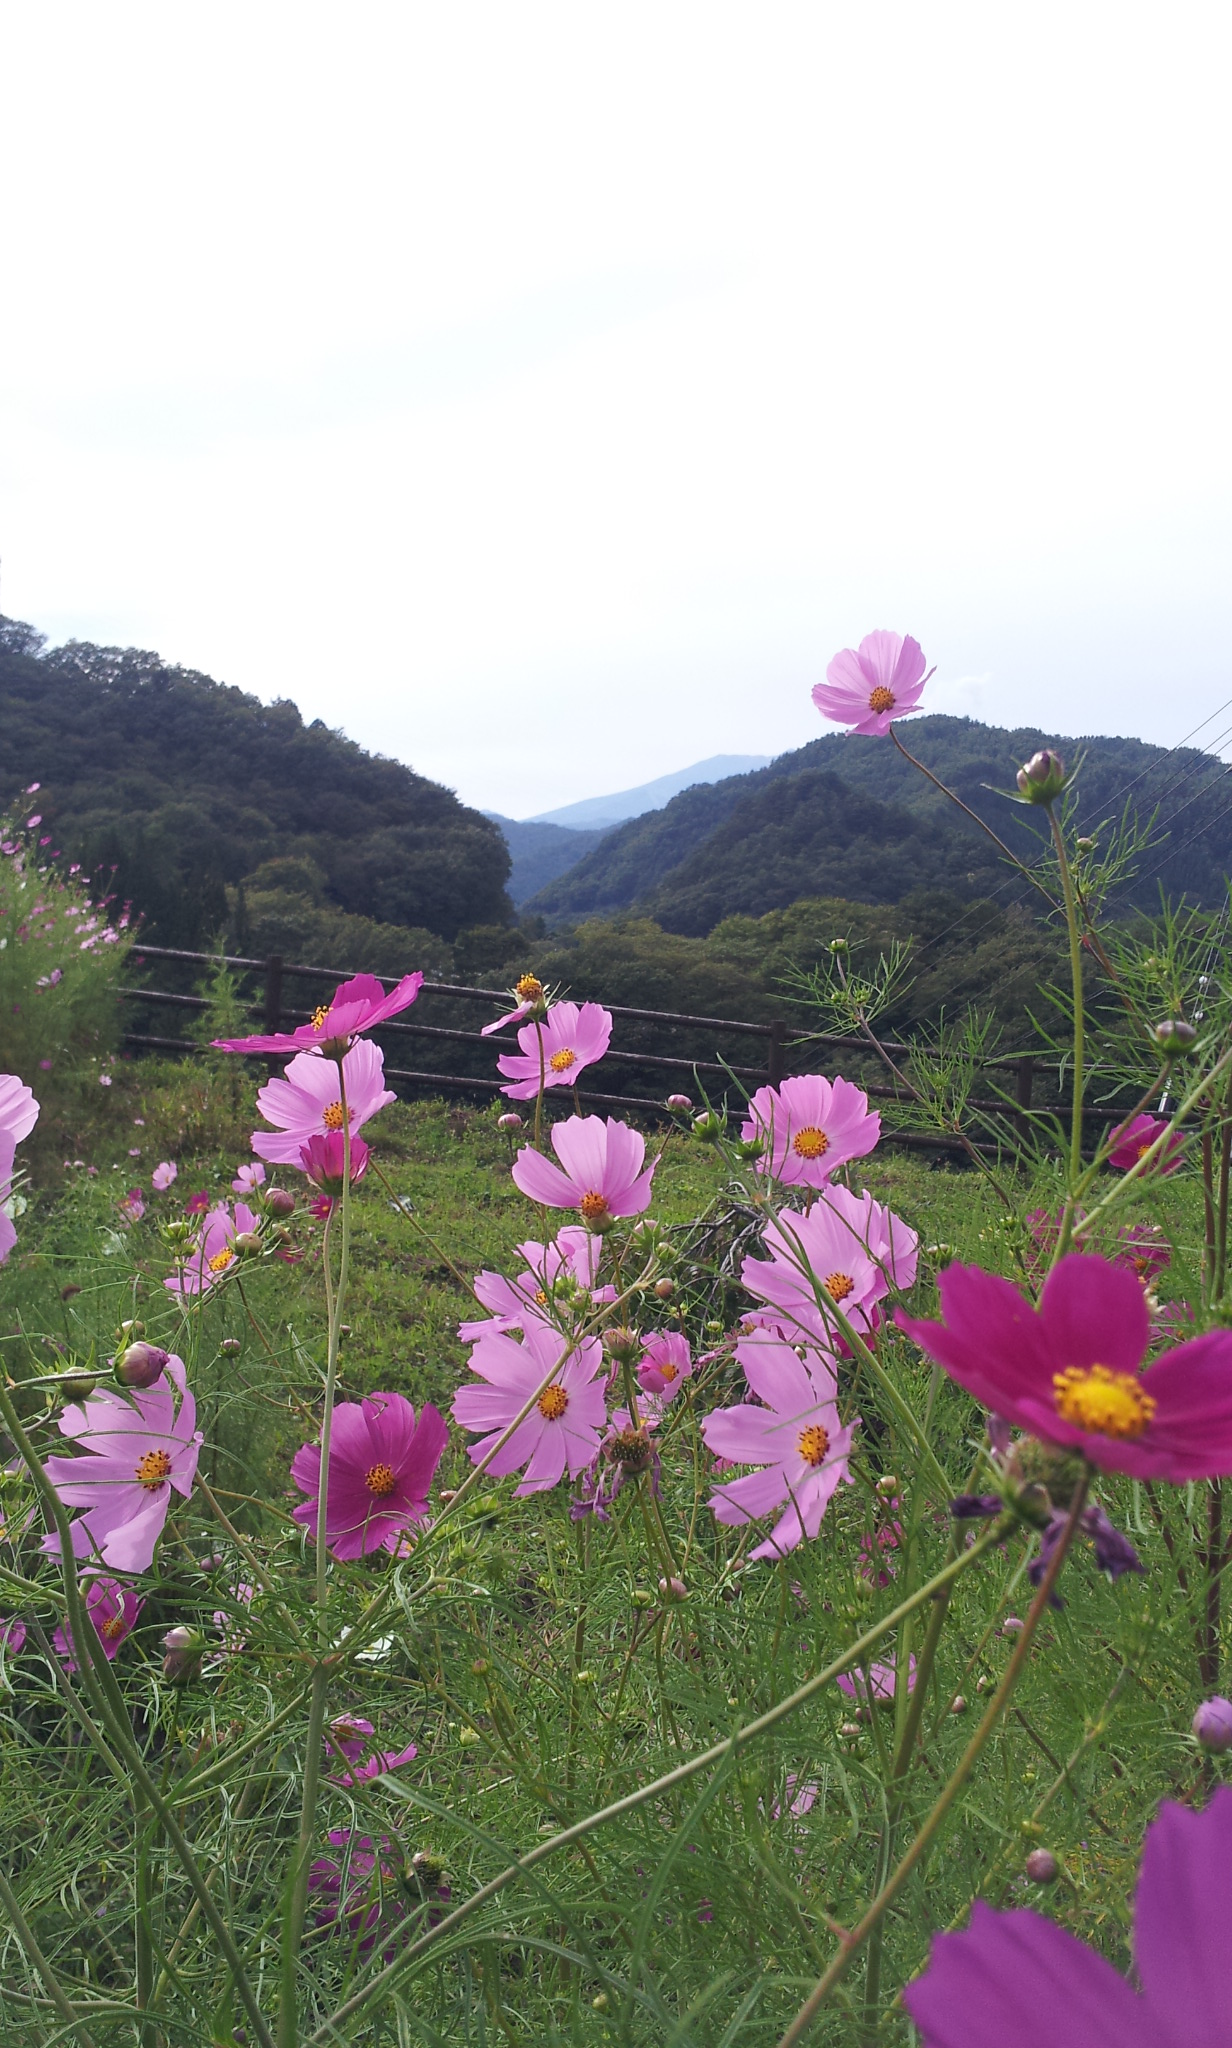 http://www.hakusekikan.co.jp/mt/images/2014-09-18%2015.16.00.jpg